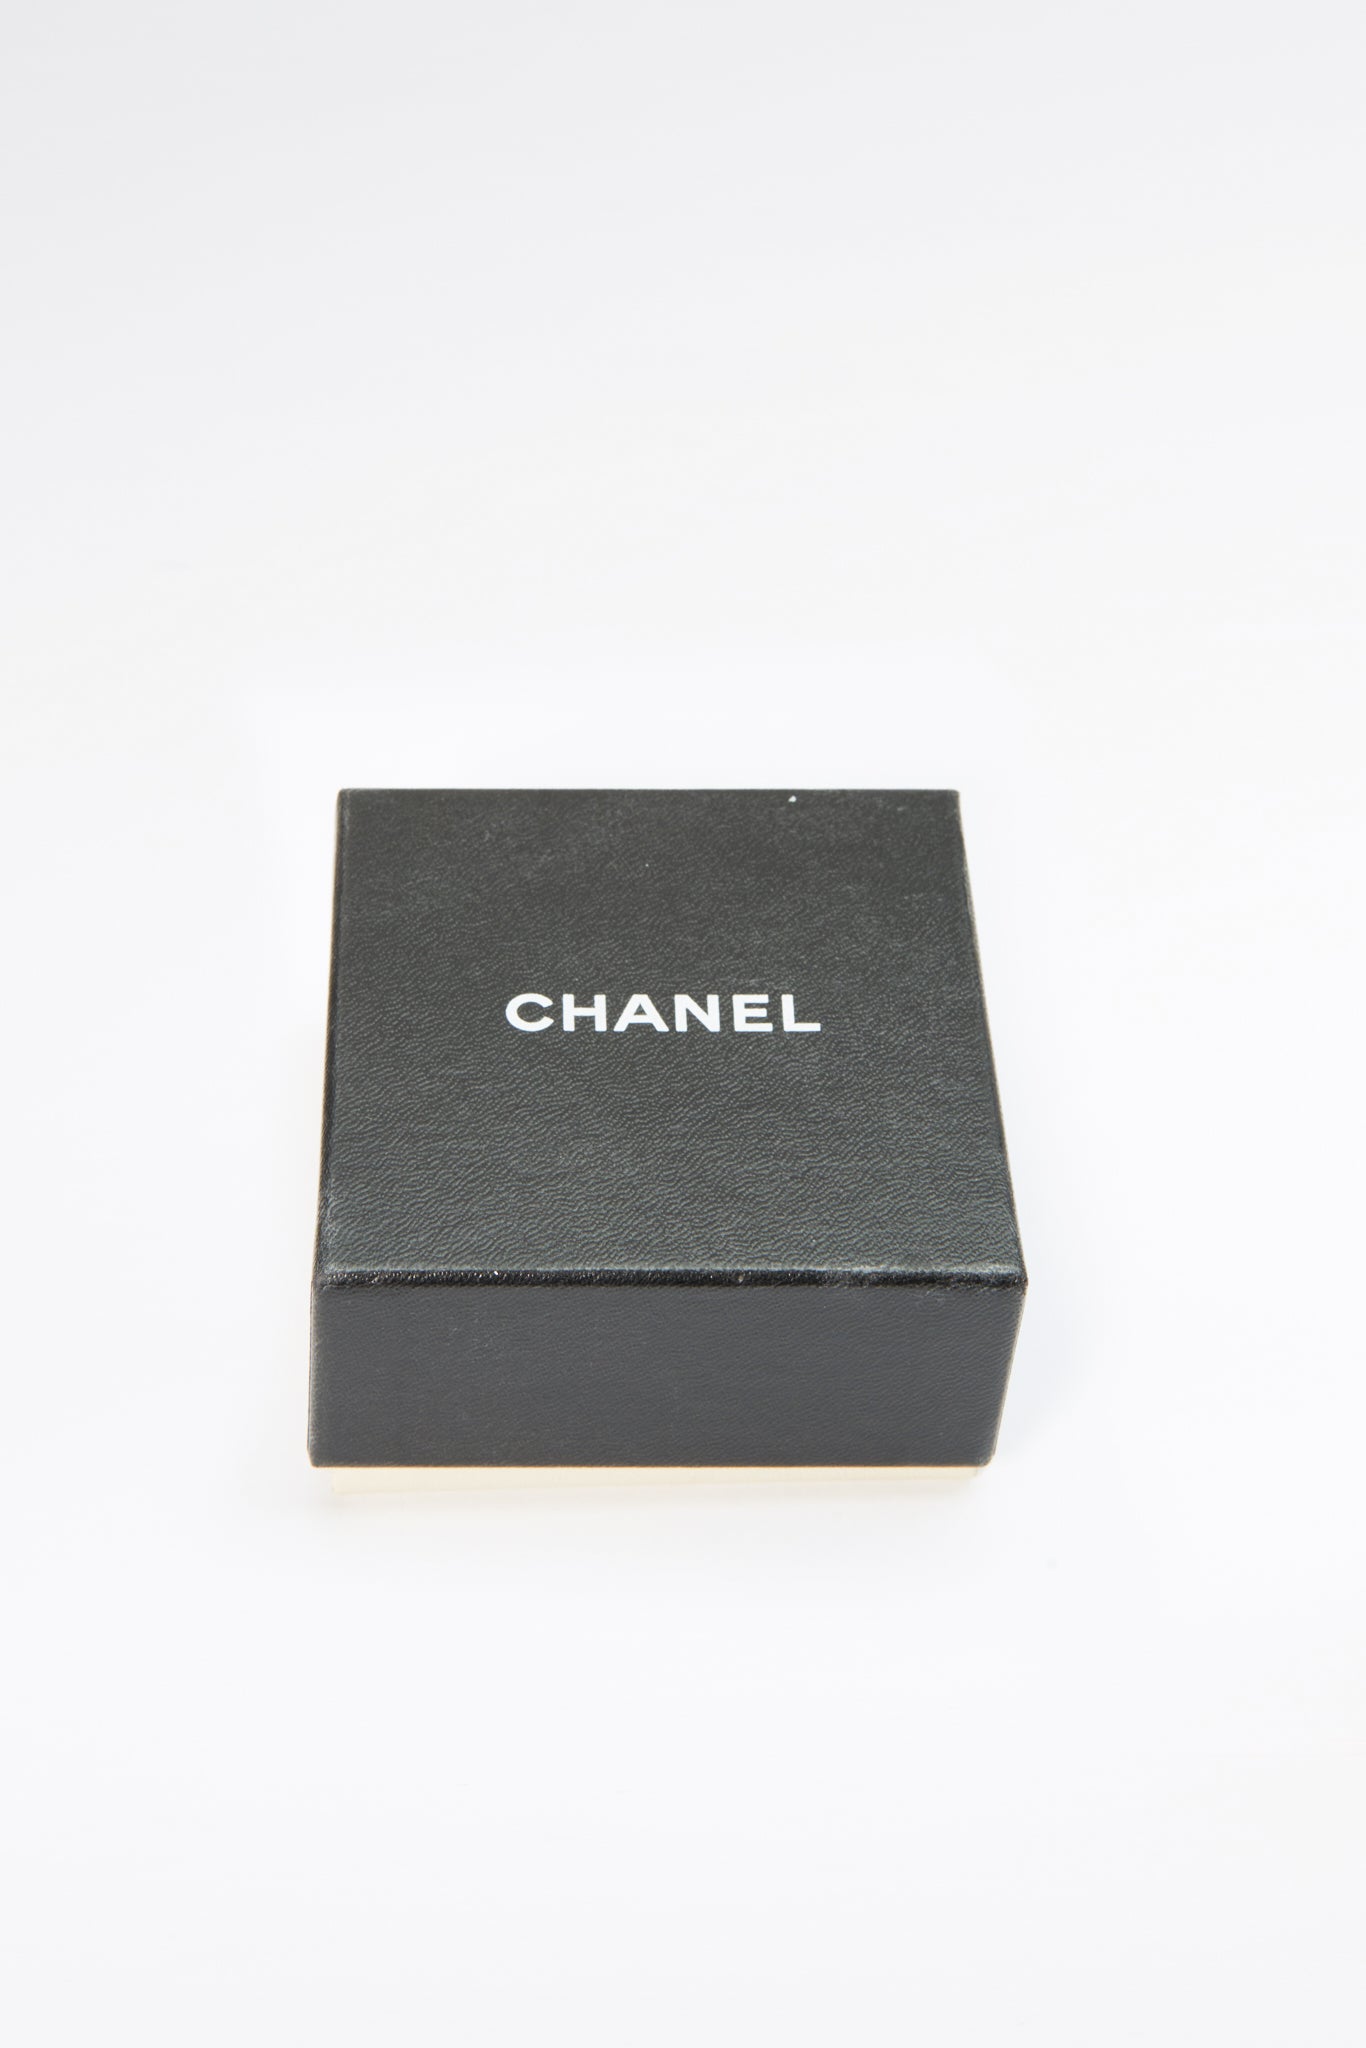 Vintage Chanel Fashion Jewelry Earrings